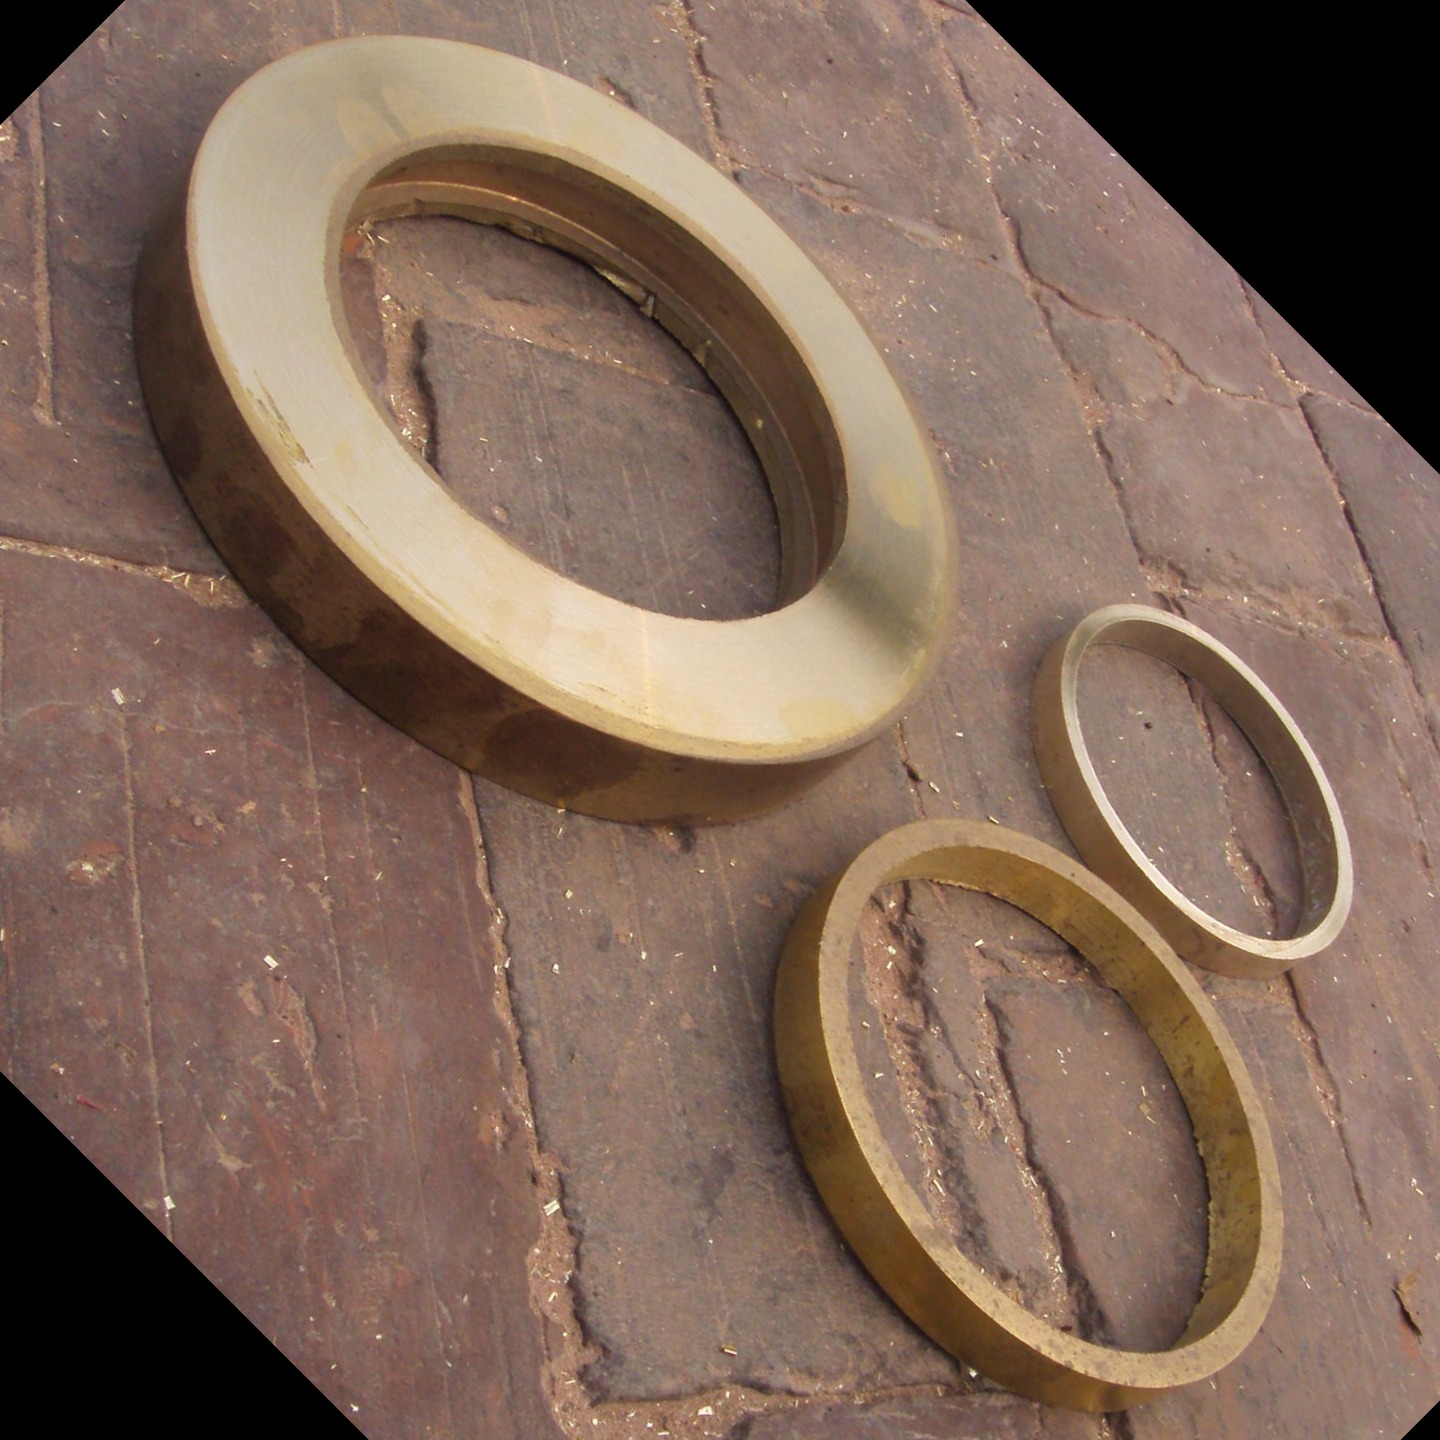 沧州泰瑞达 厂家批发铜圈 各种规格铜环 一路环 铜圈厂家批发 导电铜环量大从优